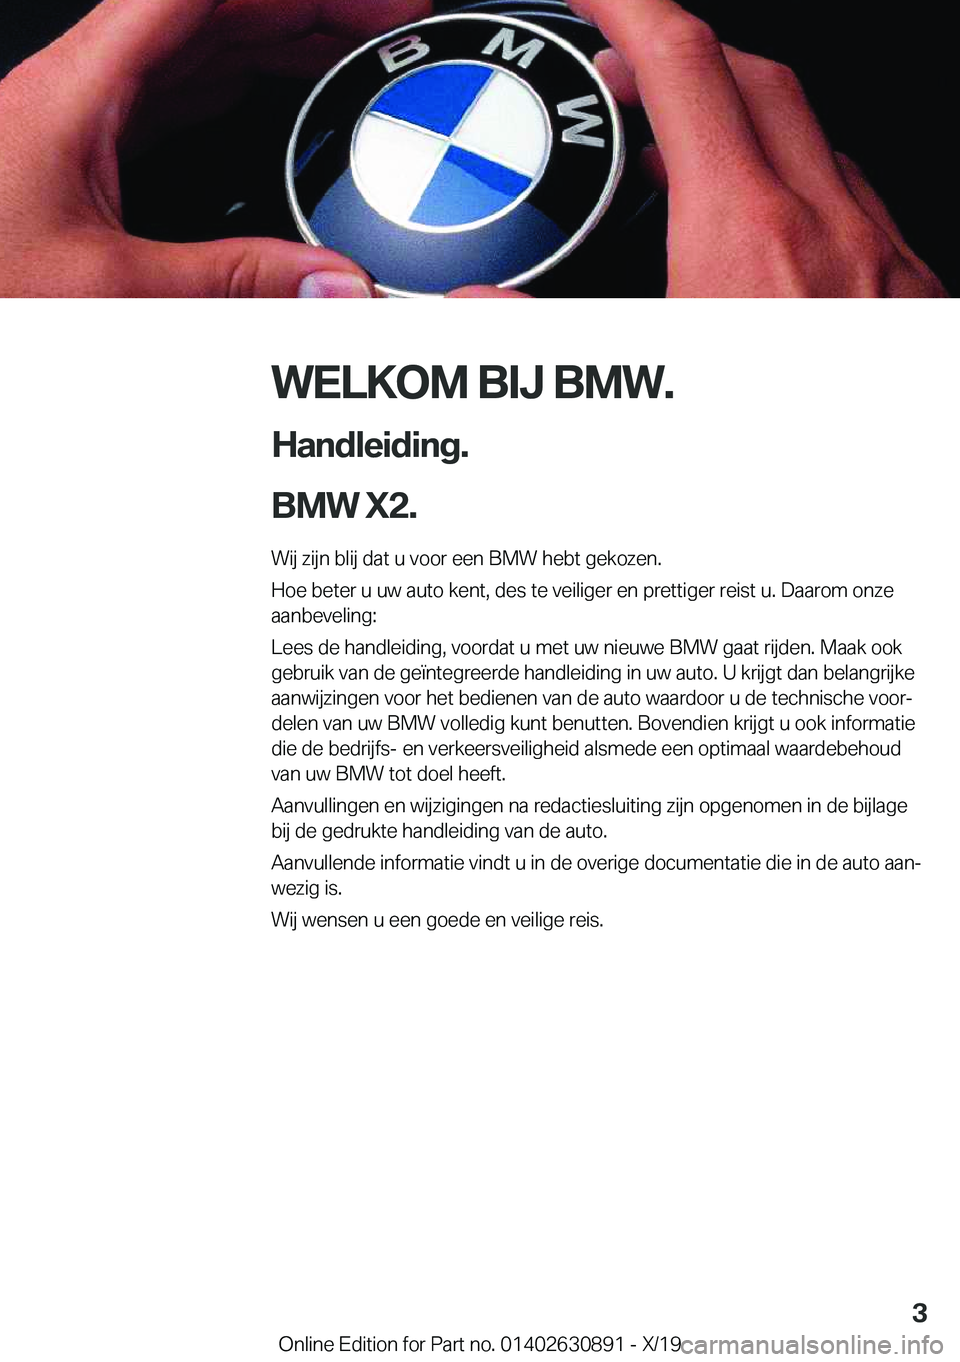 BMW X2 2020  Instructieboekjes (in Dutch) �W�E�L�K�O�M��B�I�J��B�M�W�.
�H�a�n�d�l�e�i�d�i�n�g�.
�B�M�W��X�2�. �W�i�j��z�i�j�n��b�l�i�j��d�a�t��u��v�o�o�r��e�e�n��B�M�W��h�e�b�t��g�e�k�o�z�e�n�.�H�o�e��b�e�t�e�r��u��u�w��a�u�t�